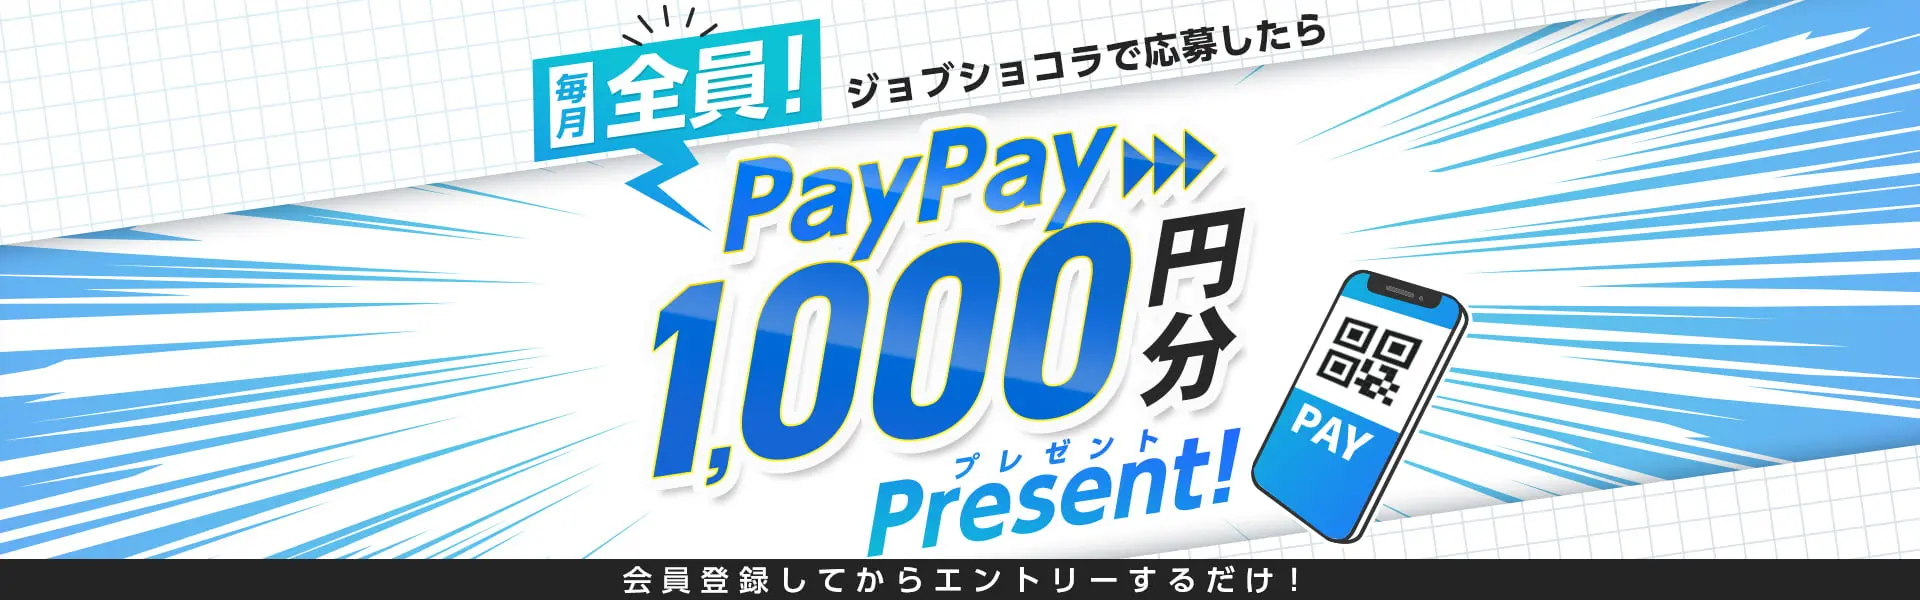 ジョブショコラで体験入社したら每月全員PayPay1,000円分プレゼント！